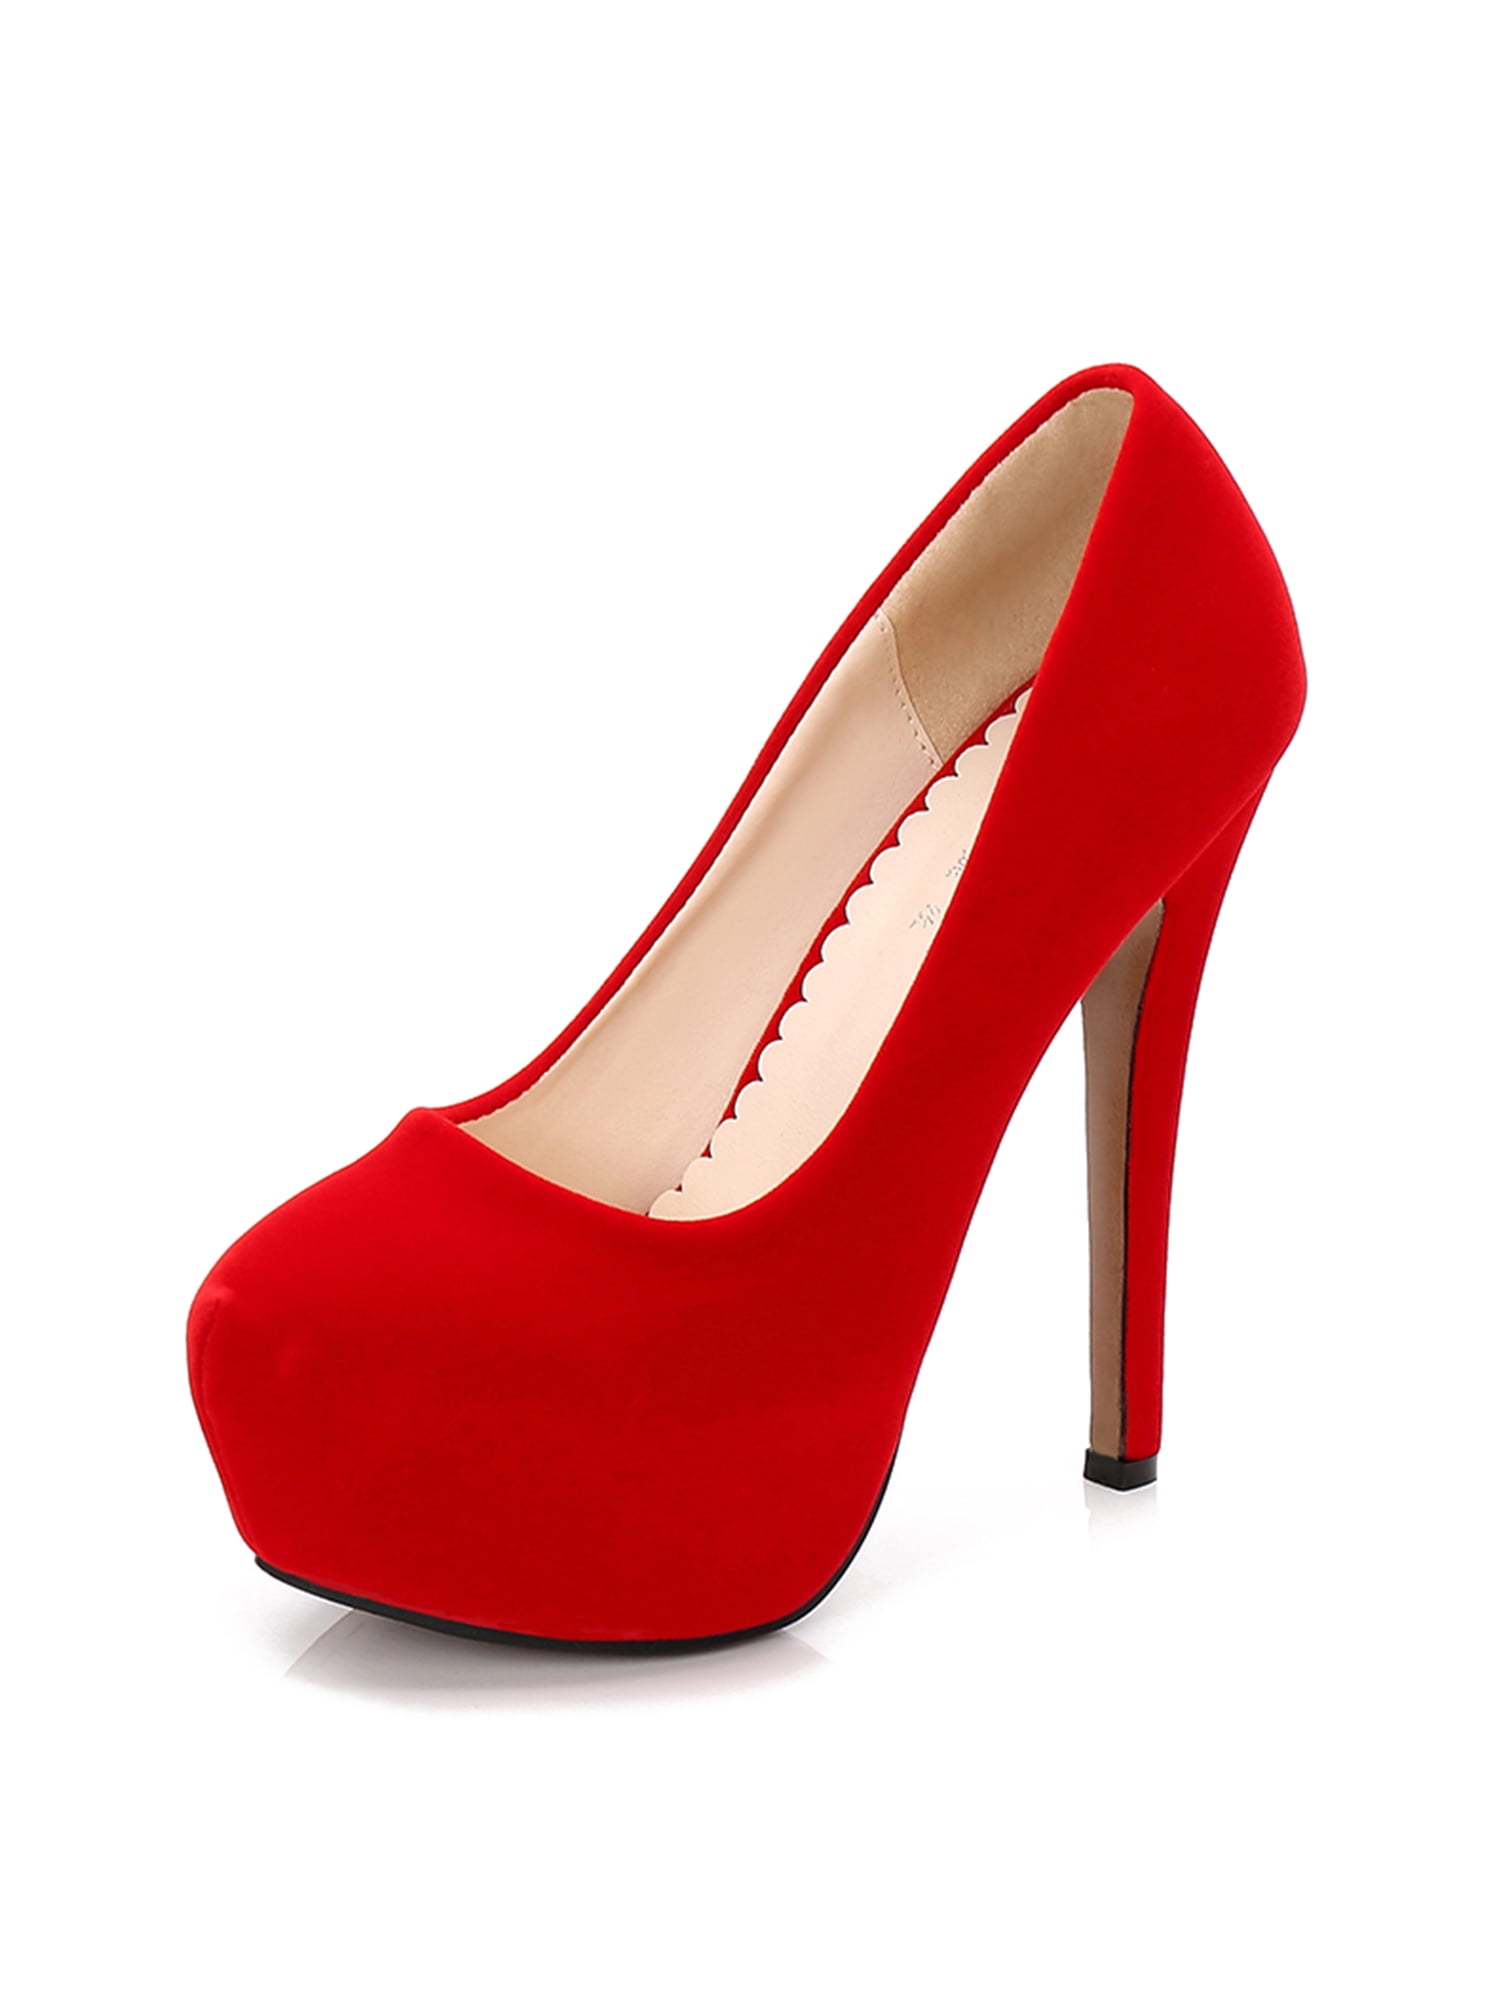 Red Heels, Women's Fashion, Footwear, Heels on Carousell-hkpdtq2012.edu.vn